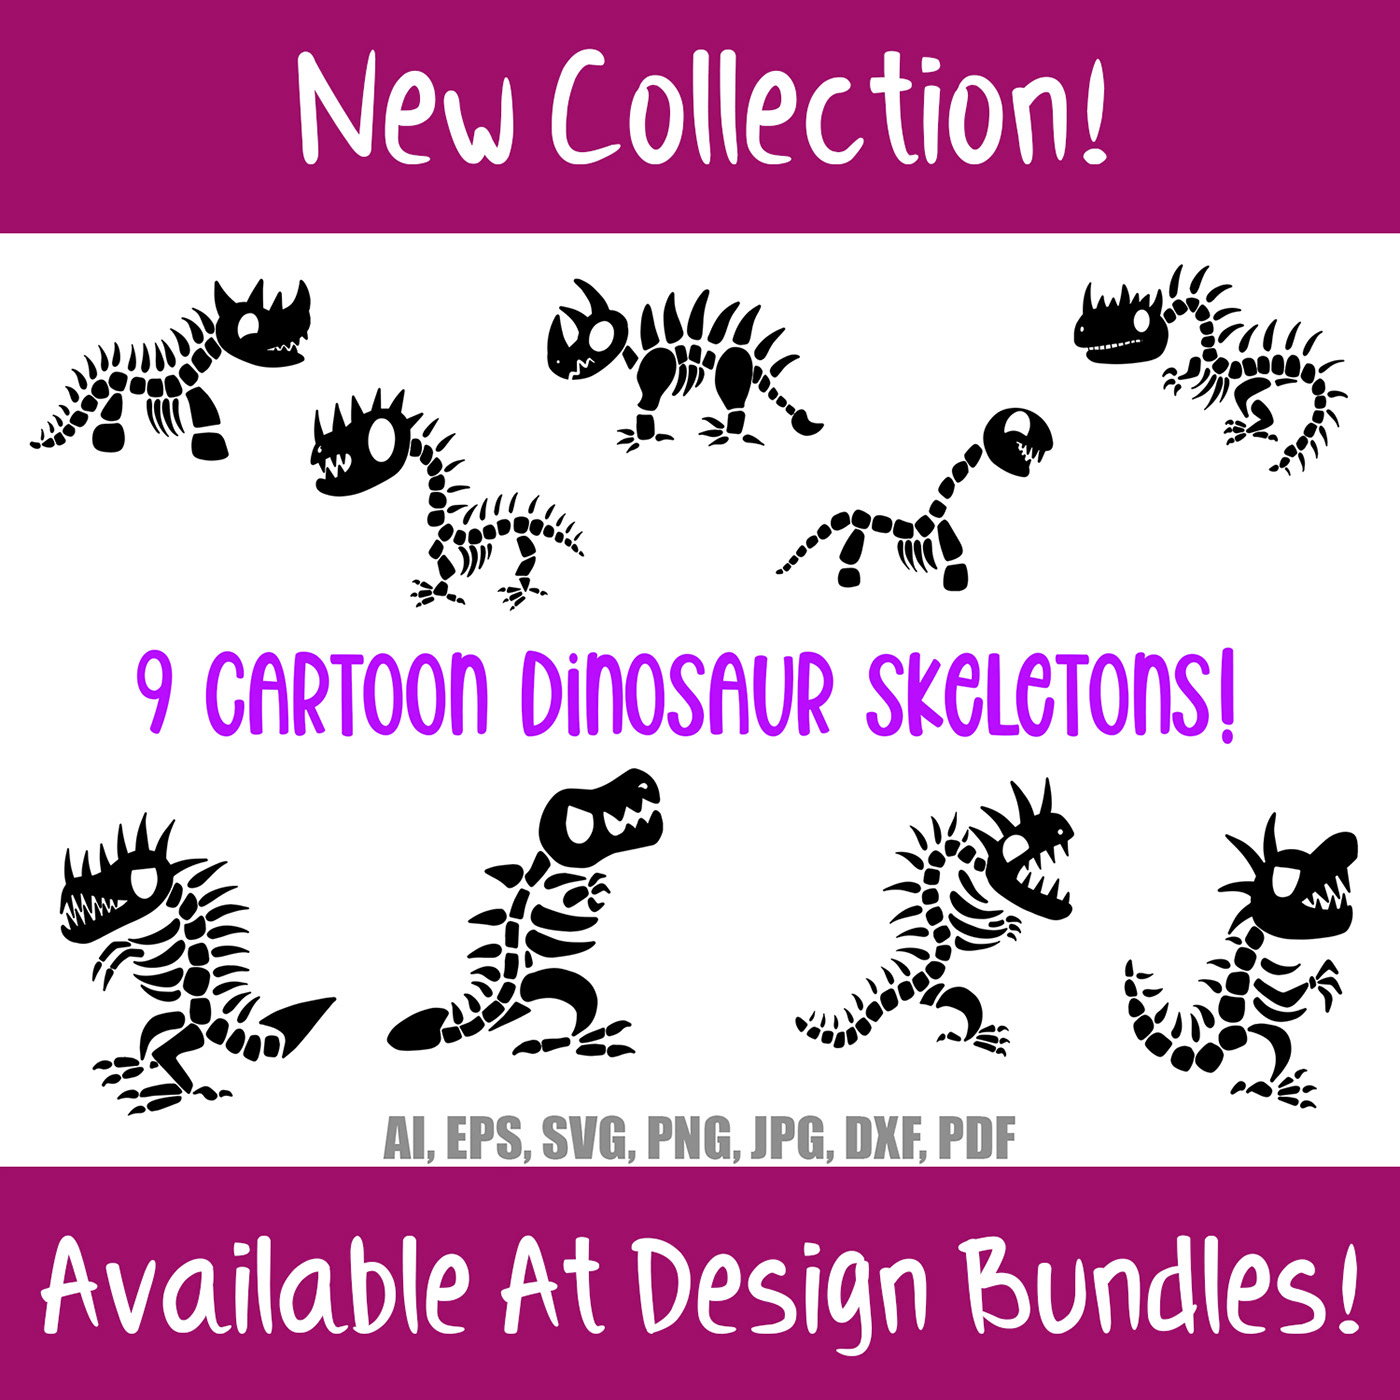 Cartoon Dinosaur Skeleton Bones Download Collection by Squeeb Creative